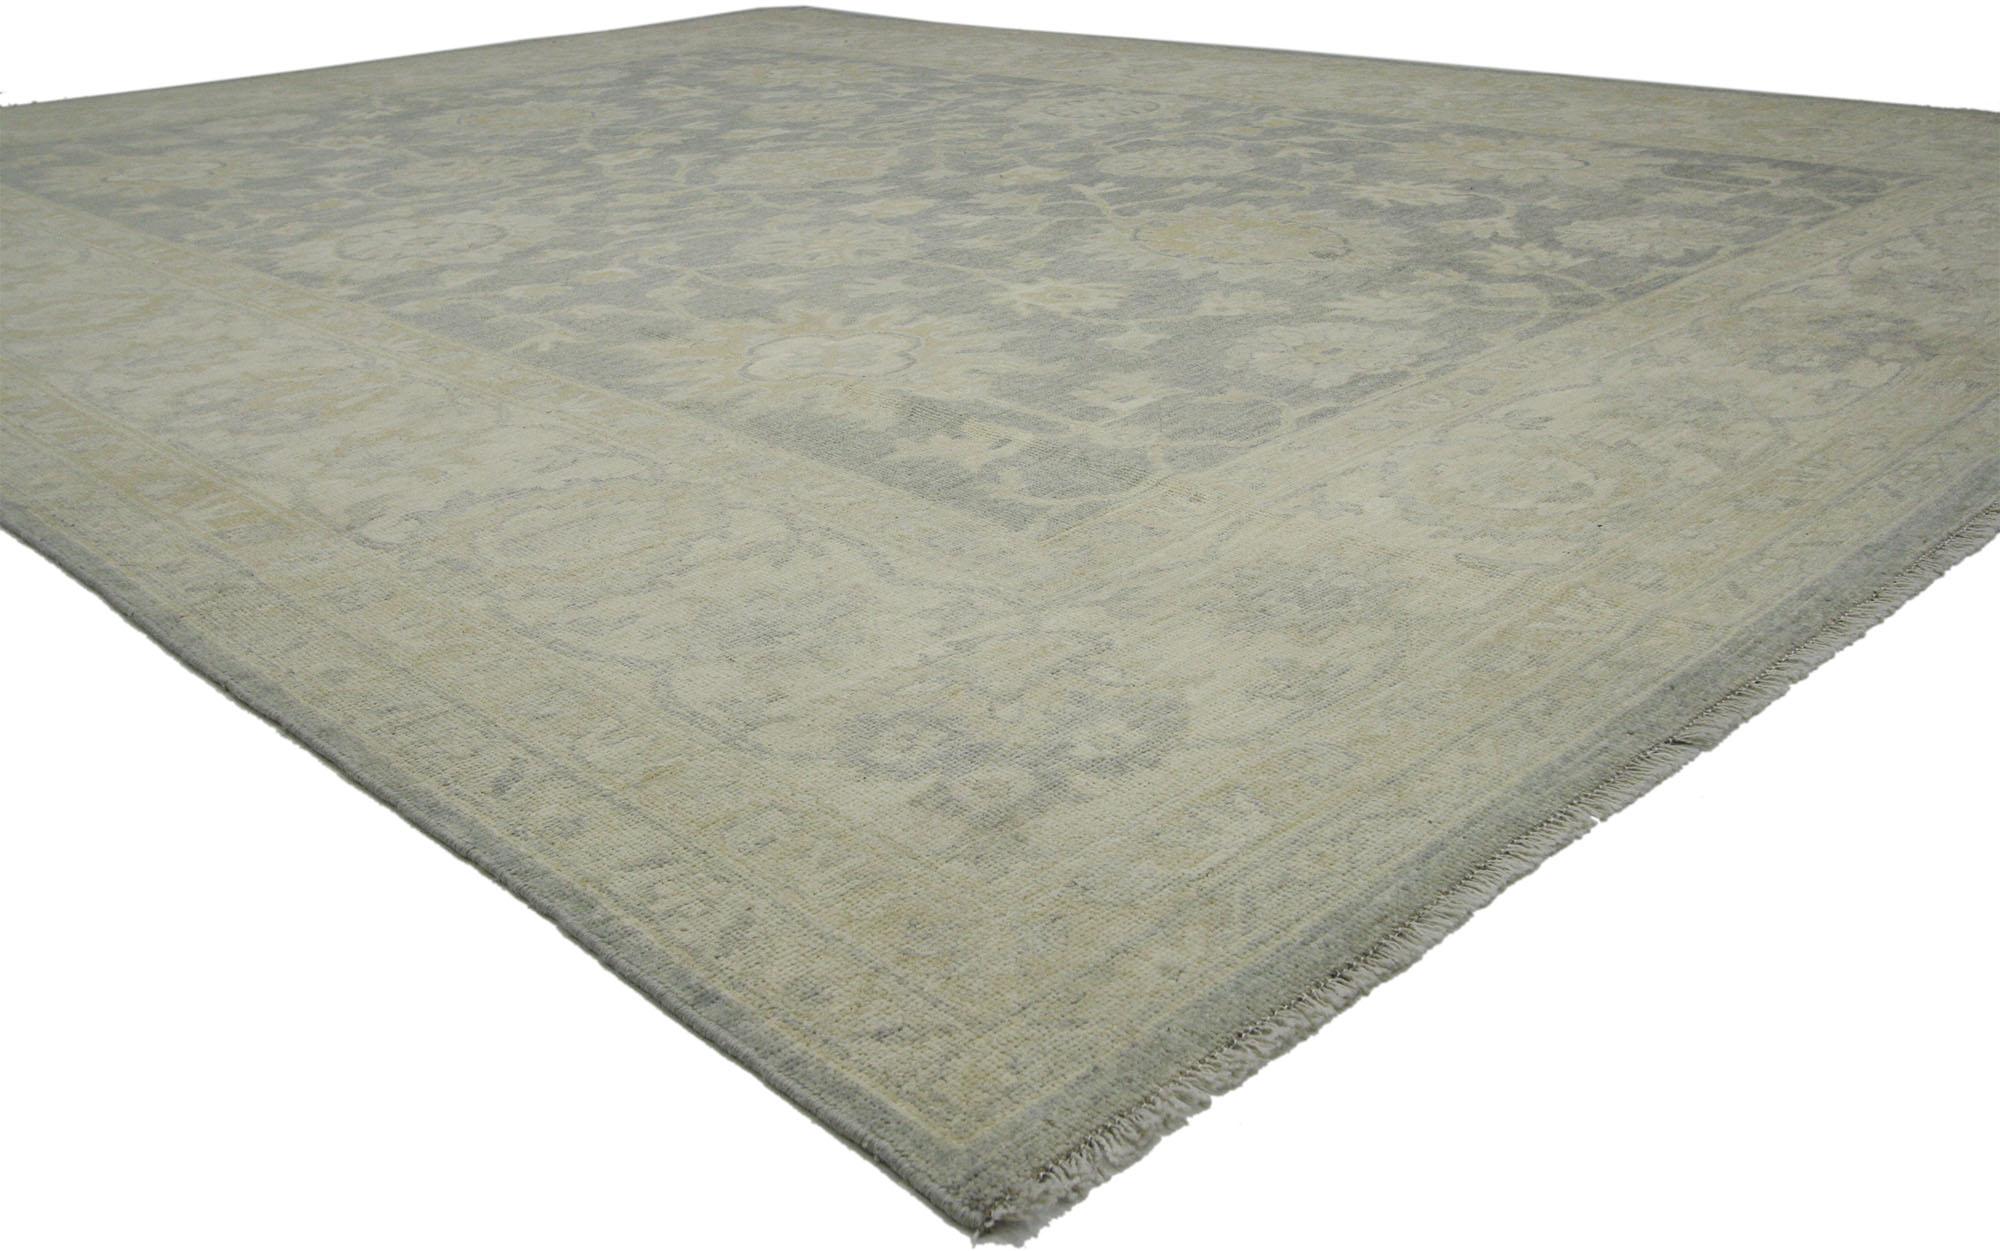 80213, nouveau tapis moderne et transitionnel de style Oushak aux couleurs neutres. Ce tapis de transition en laine nouée à la main, de style Oushak, présente un motif botanique composé de motifs Harshang, de palmettes fleuries, de fleurs et de